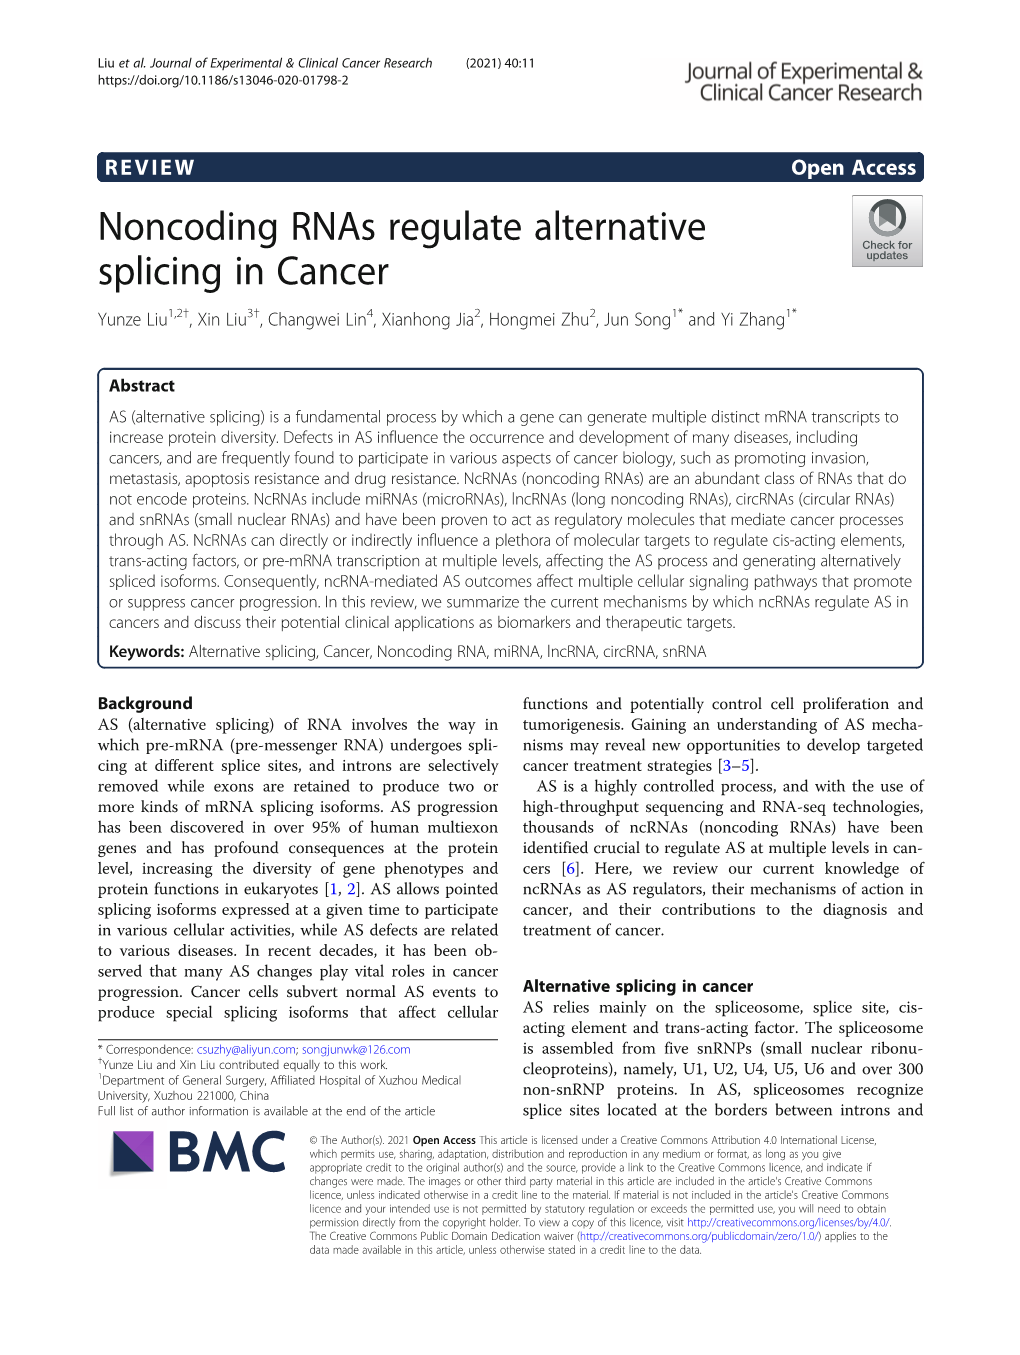 Noncoding Rnas Regulate Alternative Splicing in Cancer Yunze Liu1,2†, Xin Liu3†, Changwei Lin4, Xianhong Jia2, Hongmei Zhu2, Jun Song1* and Yi Zhang1*